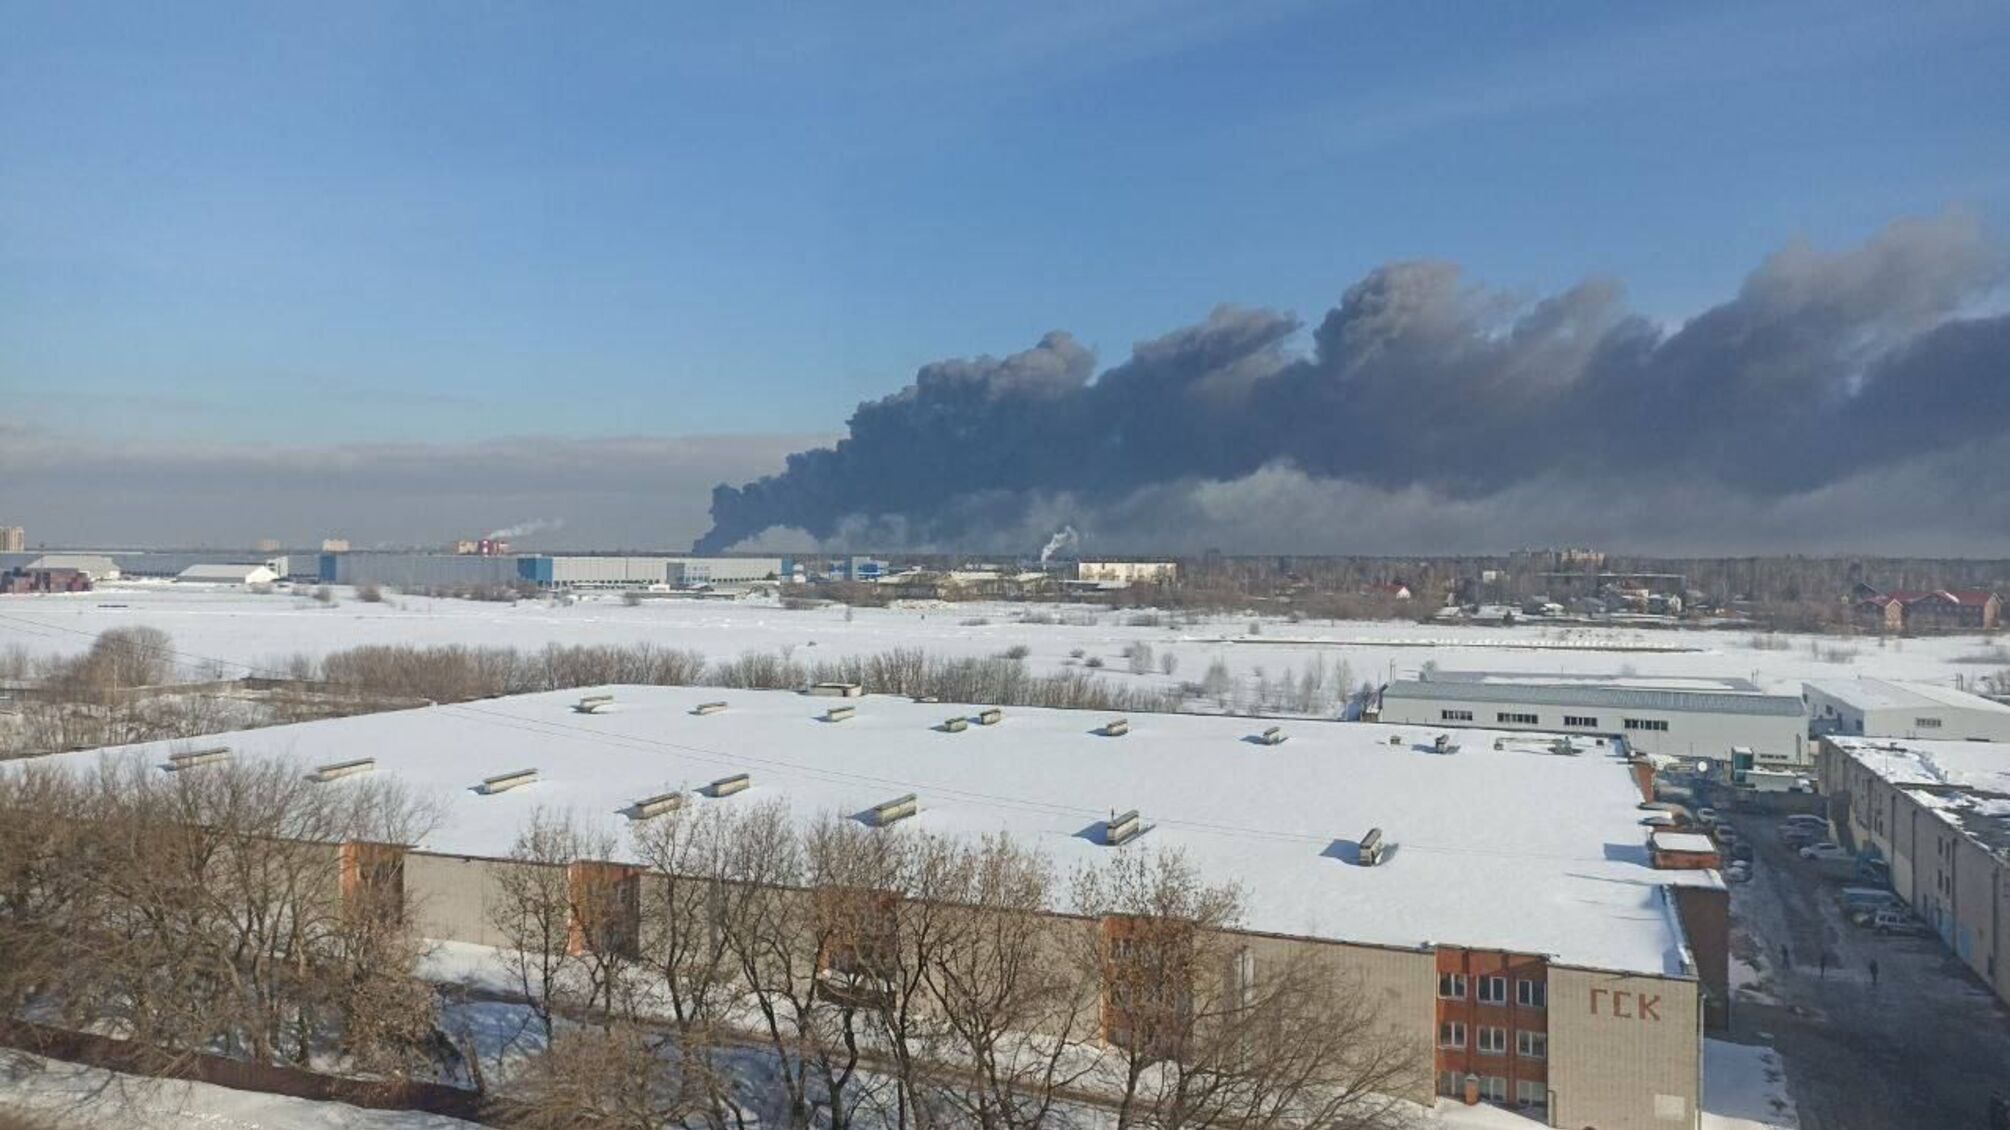 Ще одна пожежа у Московській області: горить склад будматеріалів